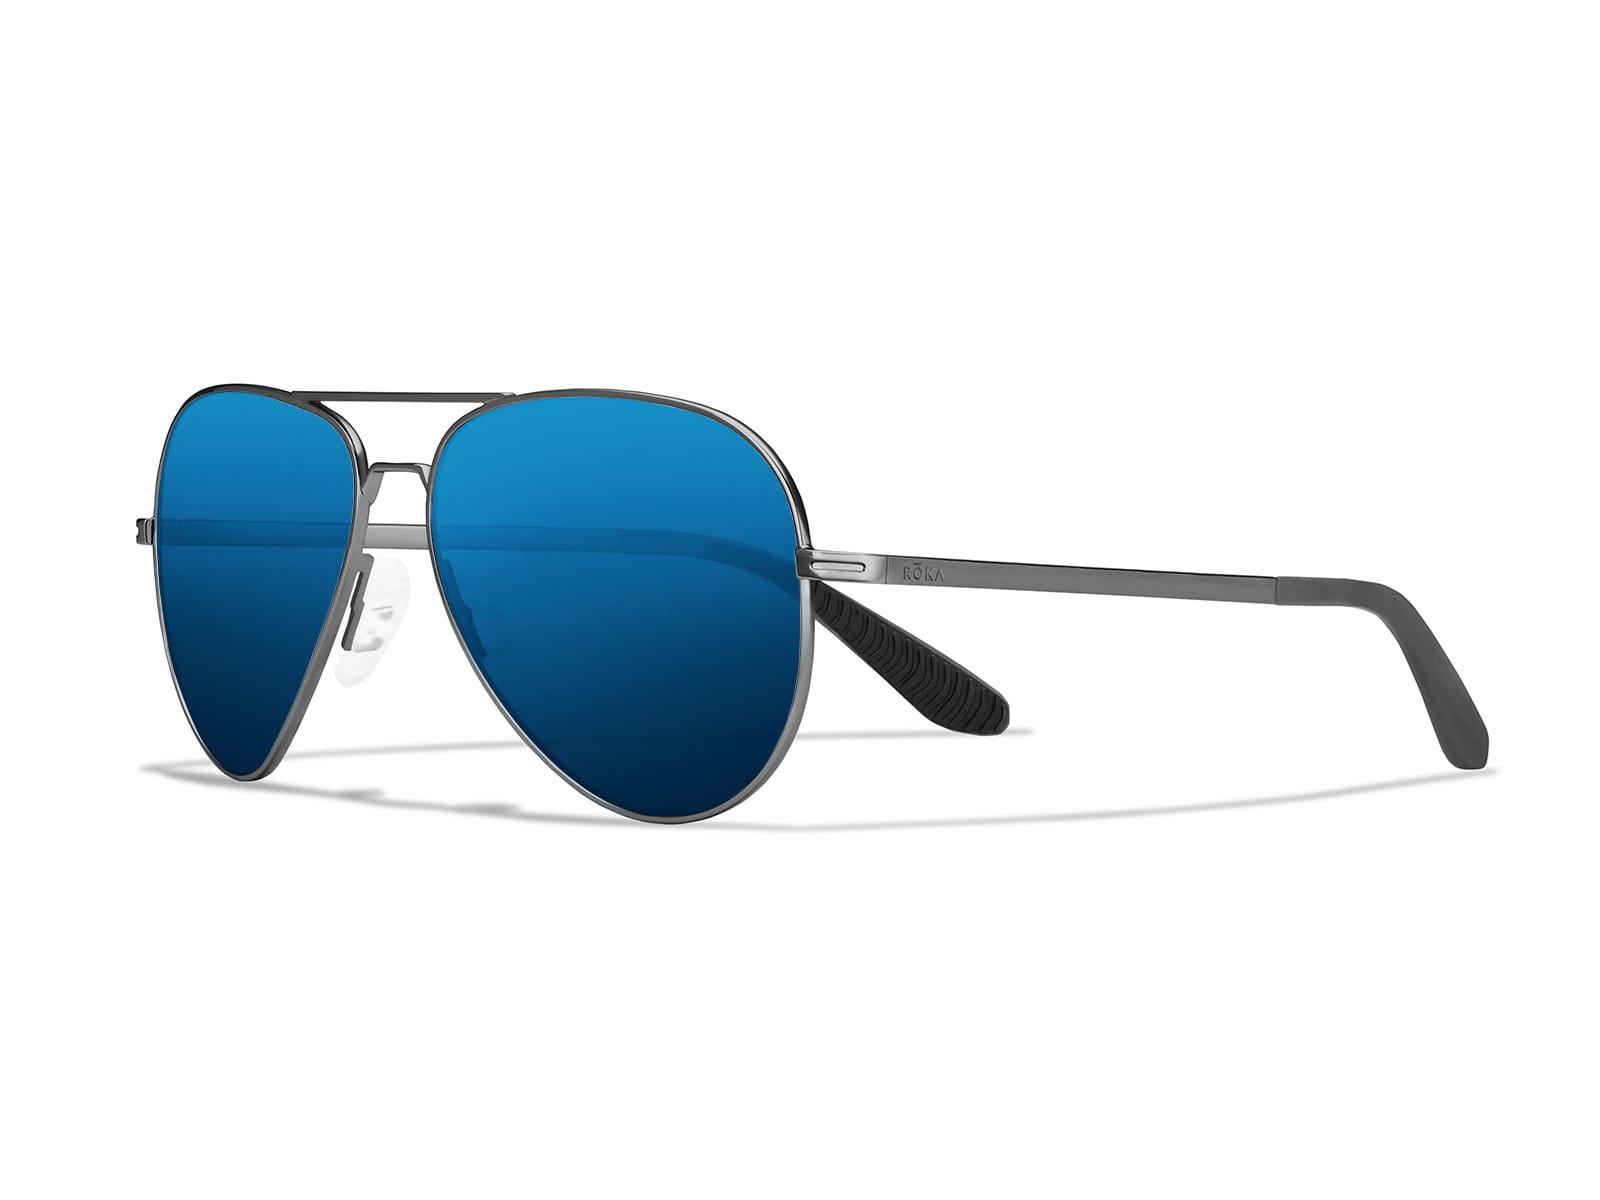 Aviator Sunglasses - Sports Sunglasses